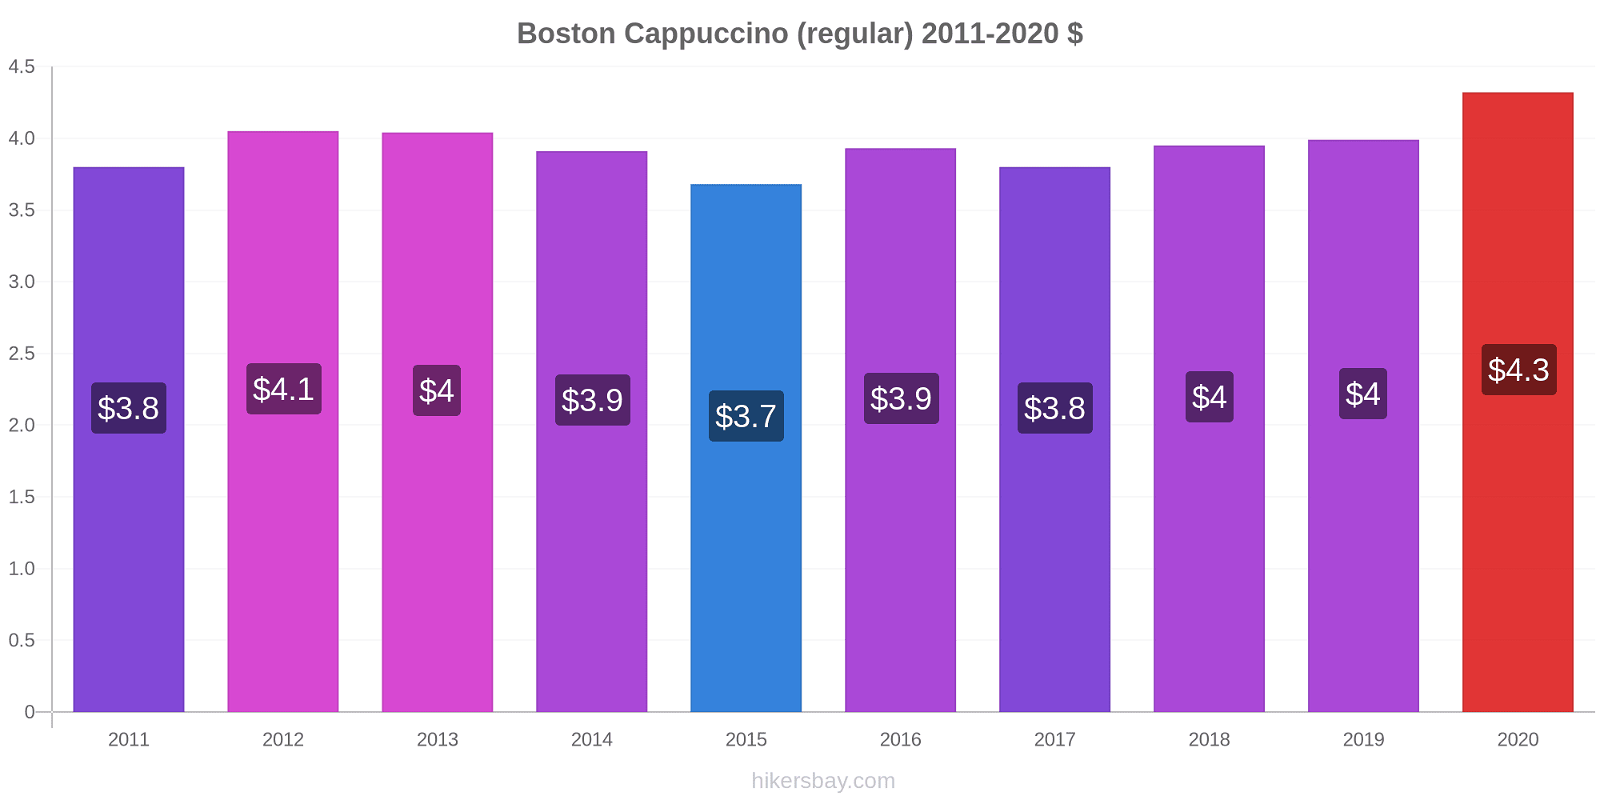 Boston variação de preço Capuccino (regular) hikersbay.com